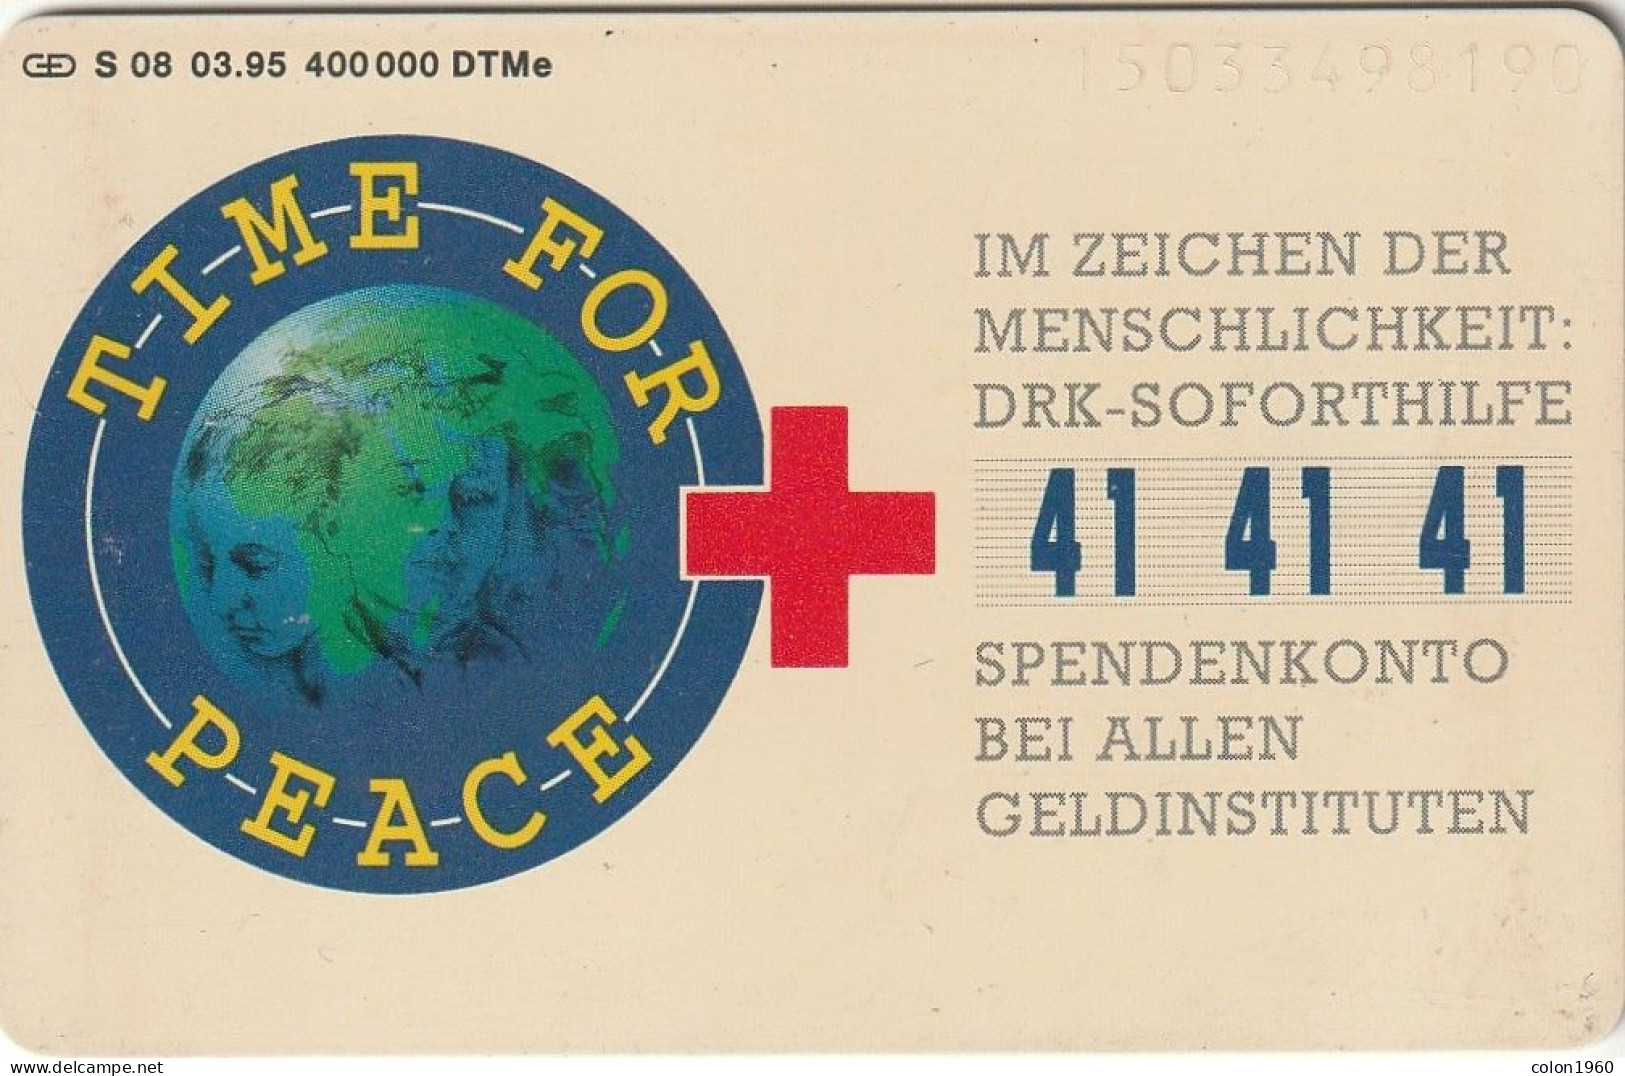 ALEMANIA. S 08/95.1. Deutsches Rotes Kreuz - Time For Peace. 1503. 03-1995. (625) - S-Series: Schalterserie Mit Fremdfirmenreklame